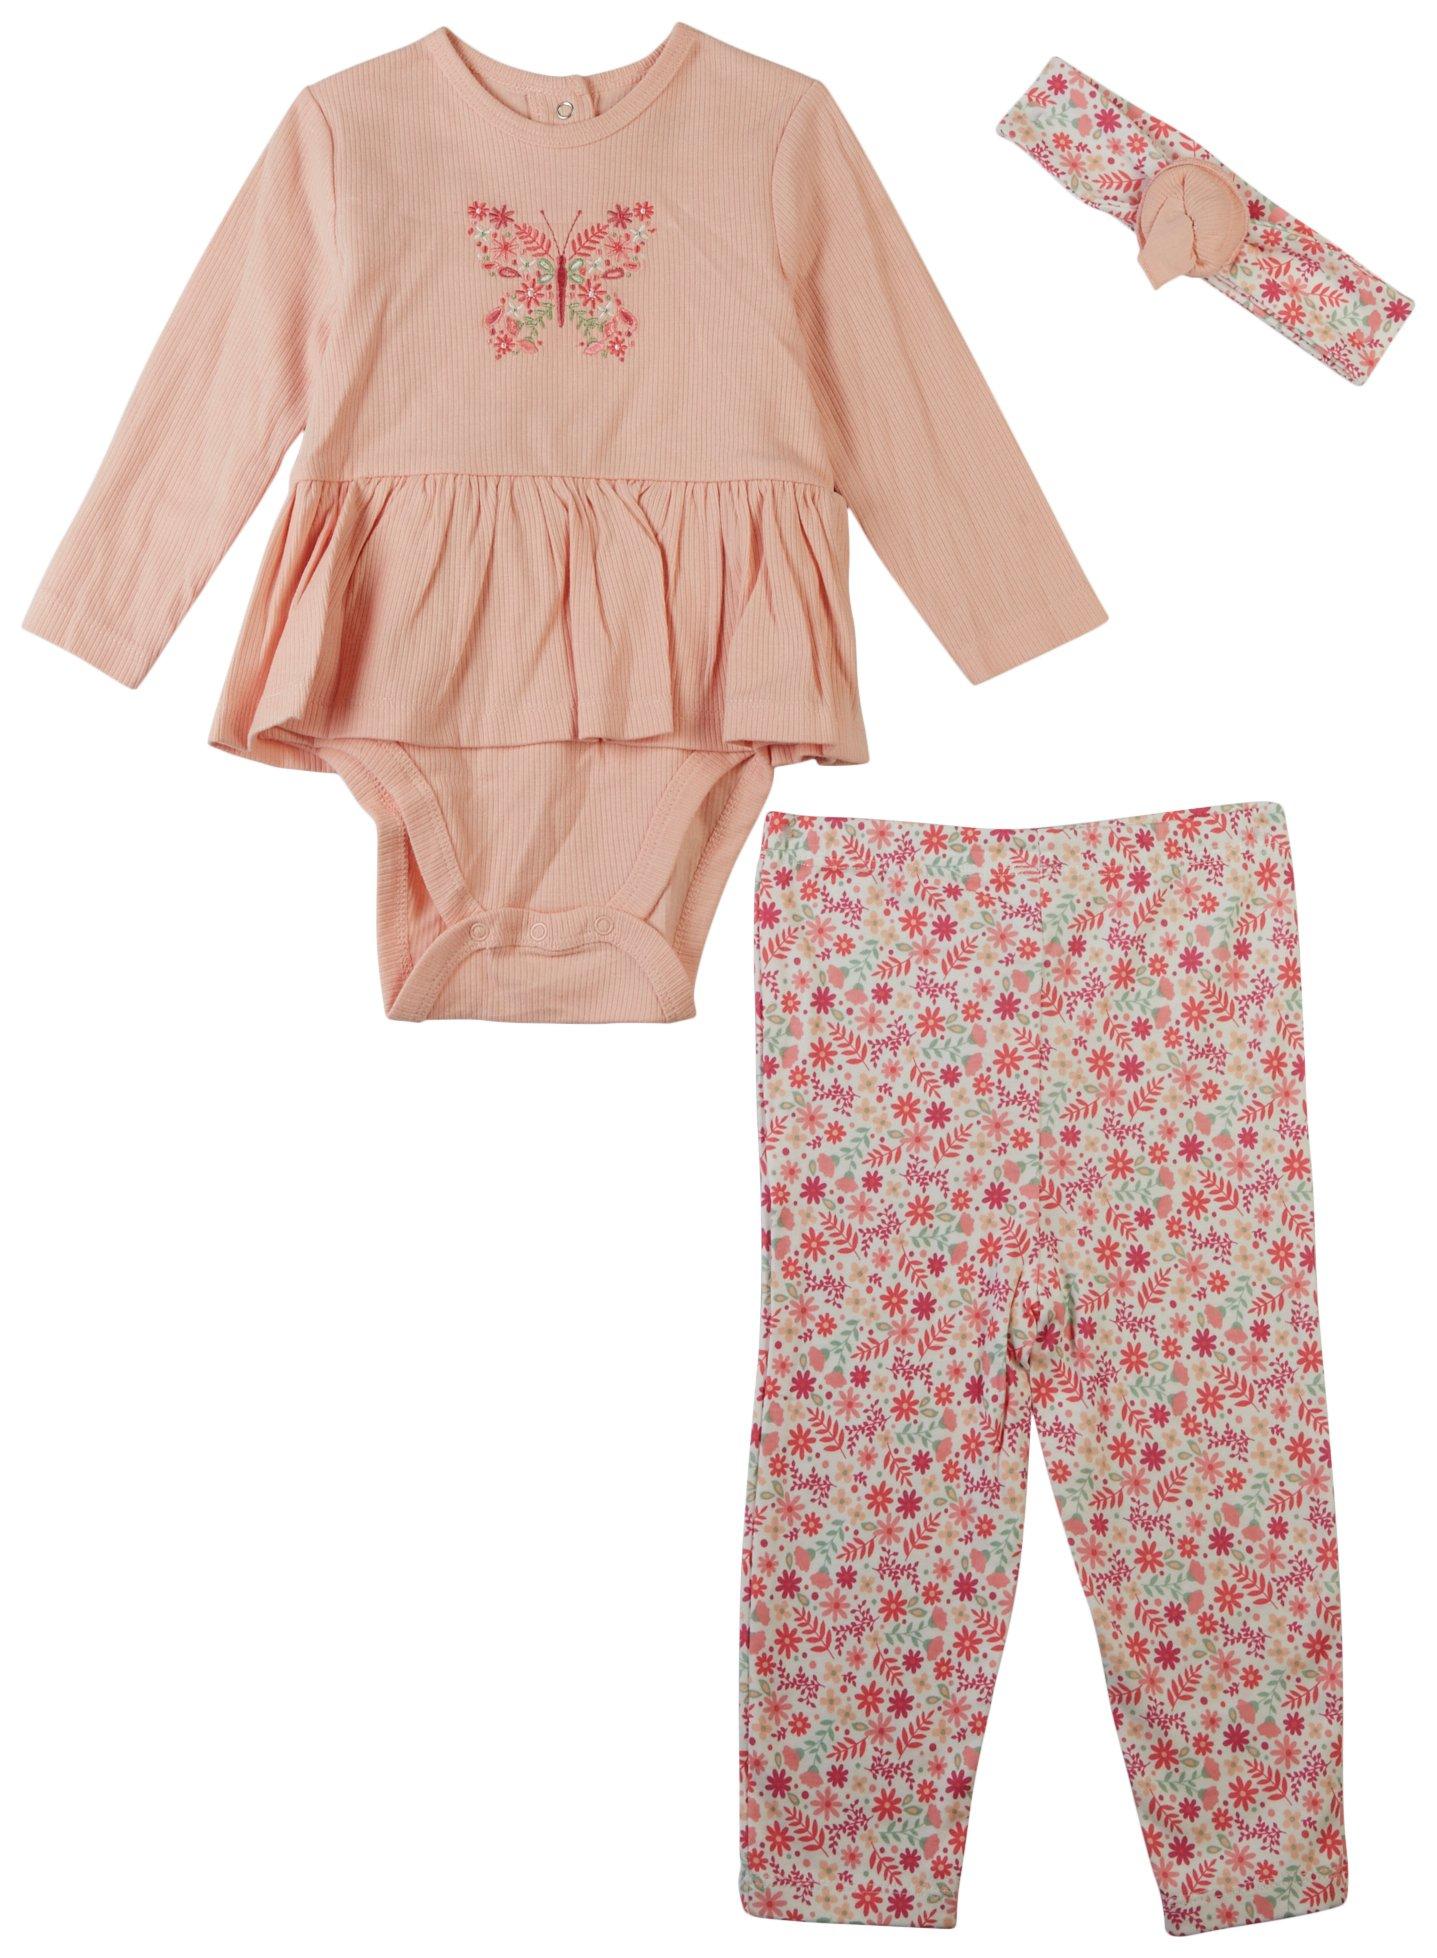 Little Me Baby Girls 3 Pc. Butterfly Dress Bodysuit Set